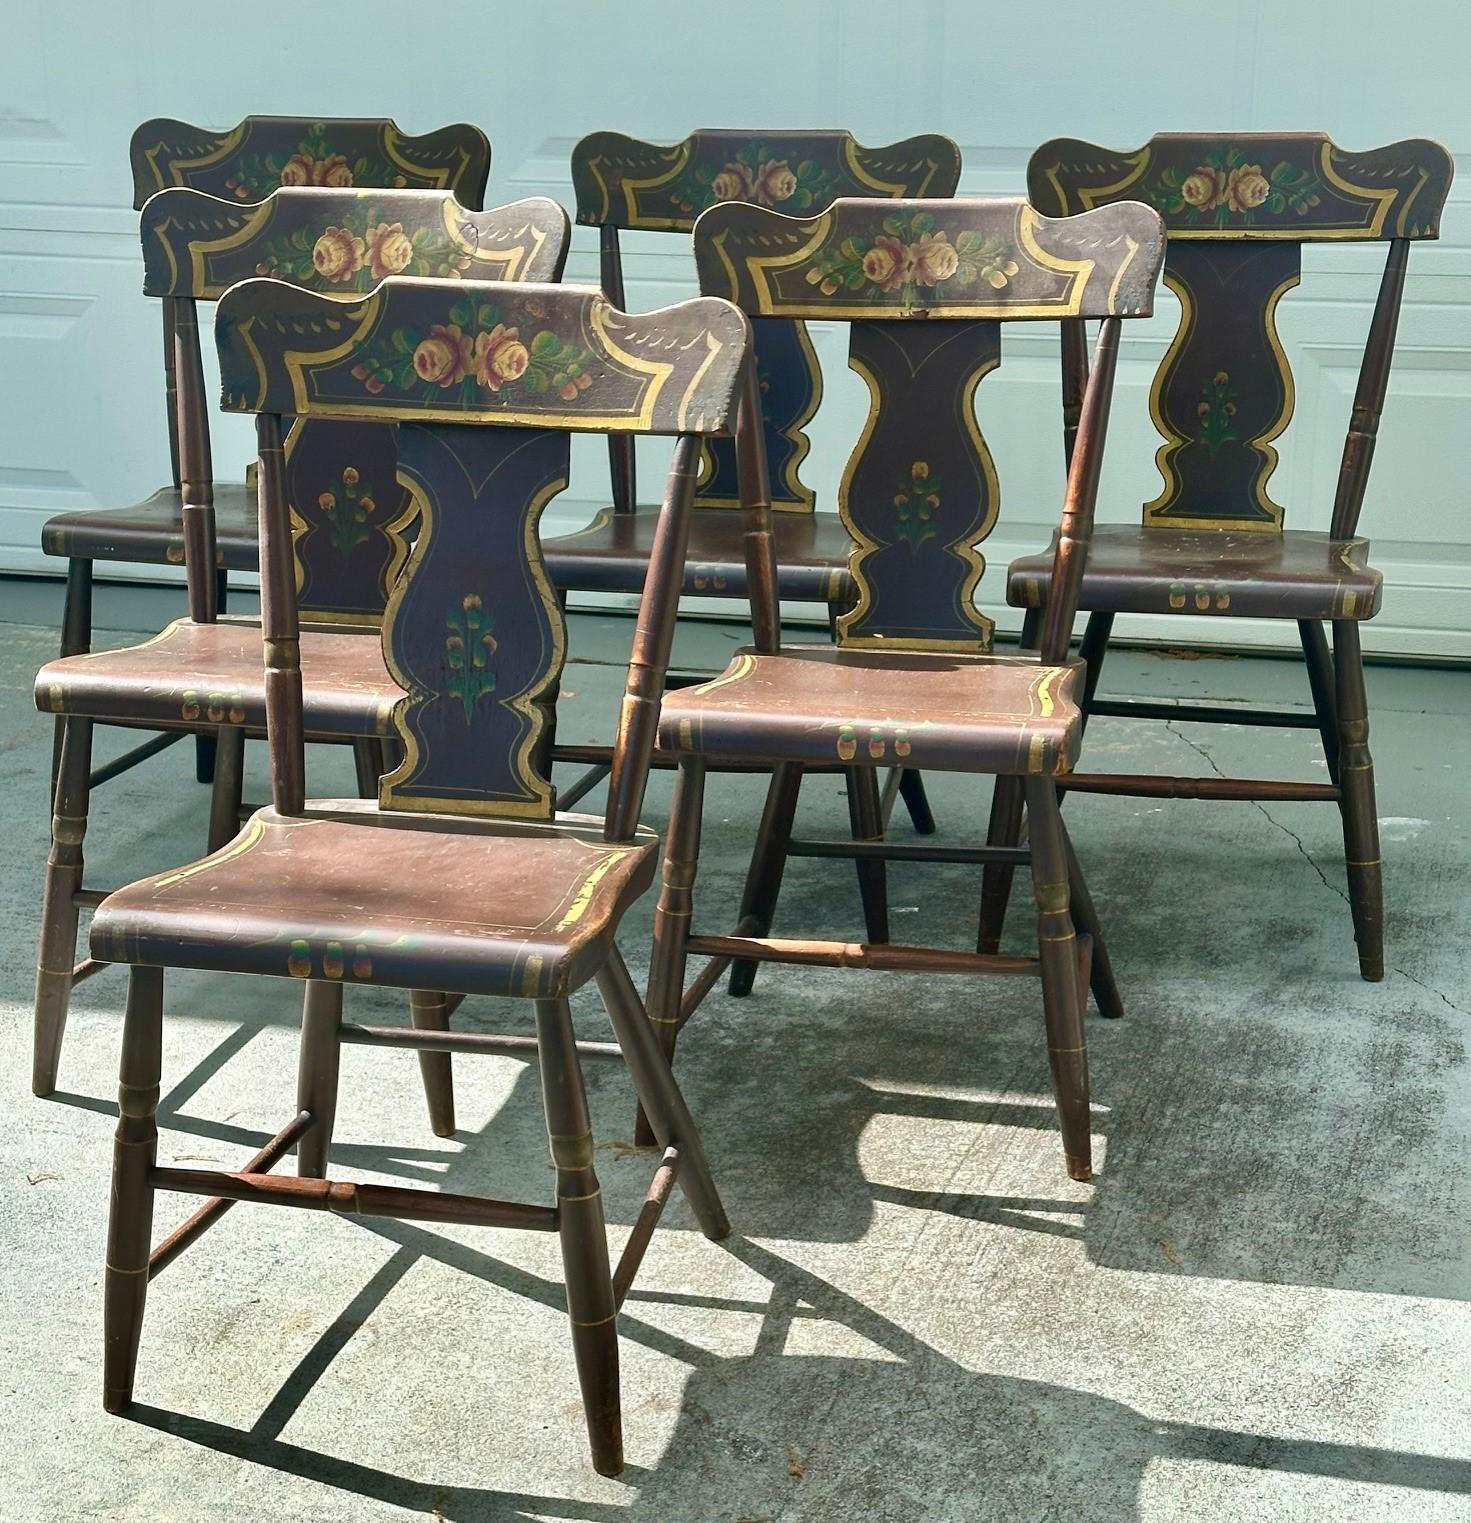 Ensemble ancien de 6 chaises à bascule en planches de Pennsylvanie peintes d'origine.

Rare ensemble de six chaises anciennes (vers 1850) d'origine Amish de Pennsylvanie. C'est l'Americana dans toute sa splendeur. Ils ont probablement été construits